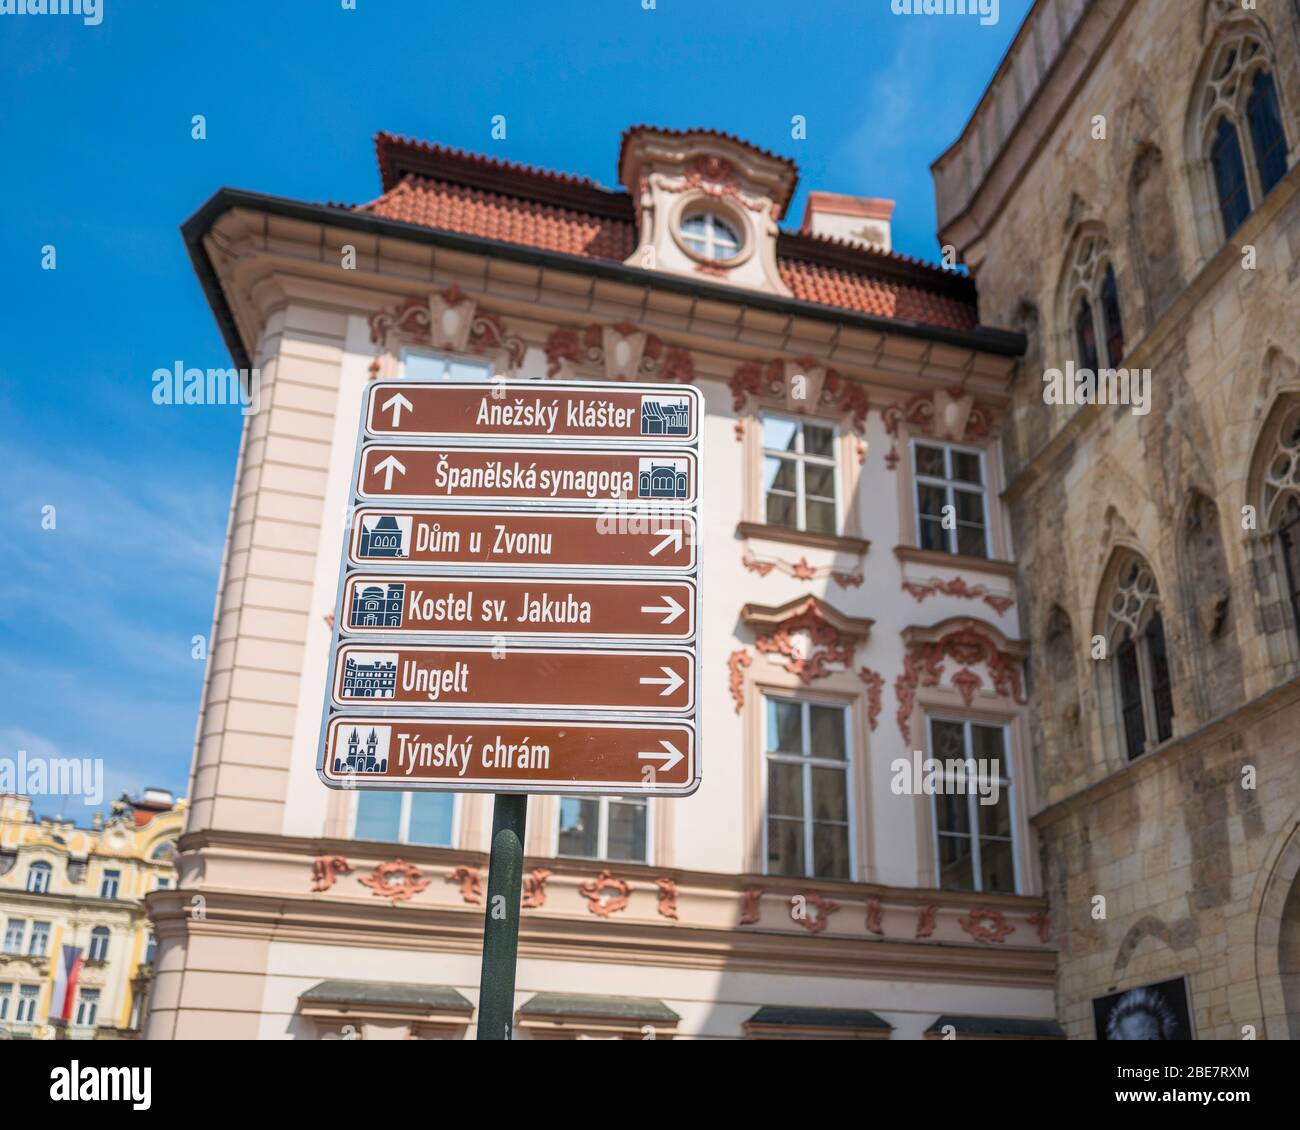 Der Wegweiser auf dem Altstädter Ring von Prag, Tschechische Republik, weist auf eine Reihe von Sehenswürdigkeiten in der Altstadt hin. Stockfoto